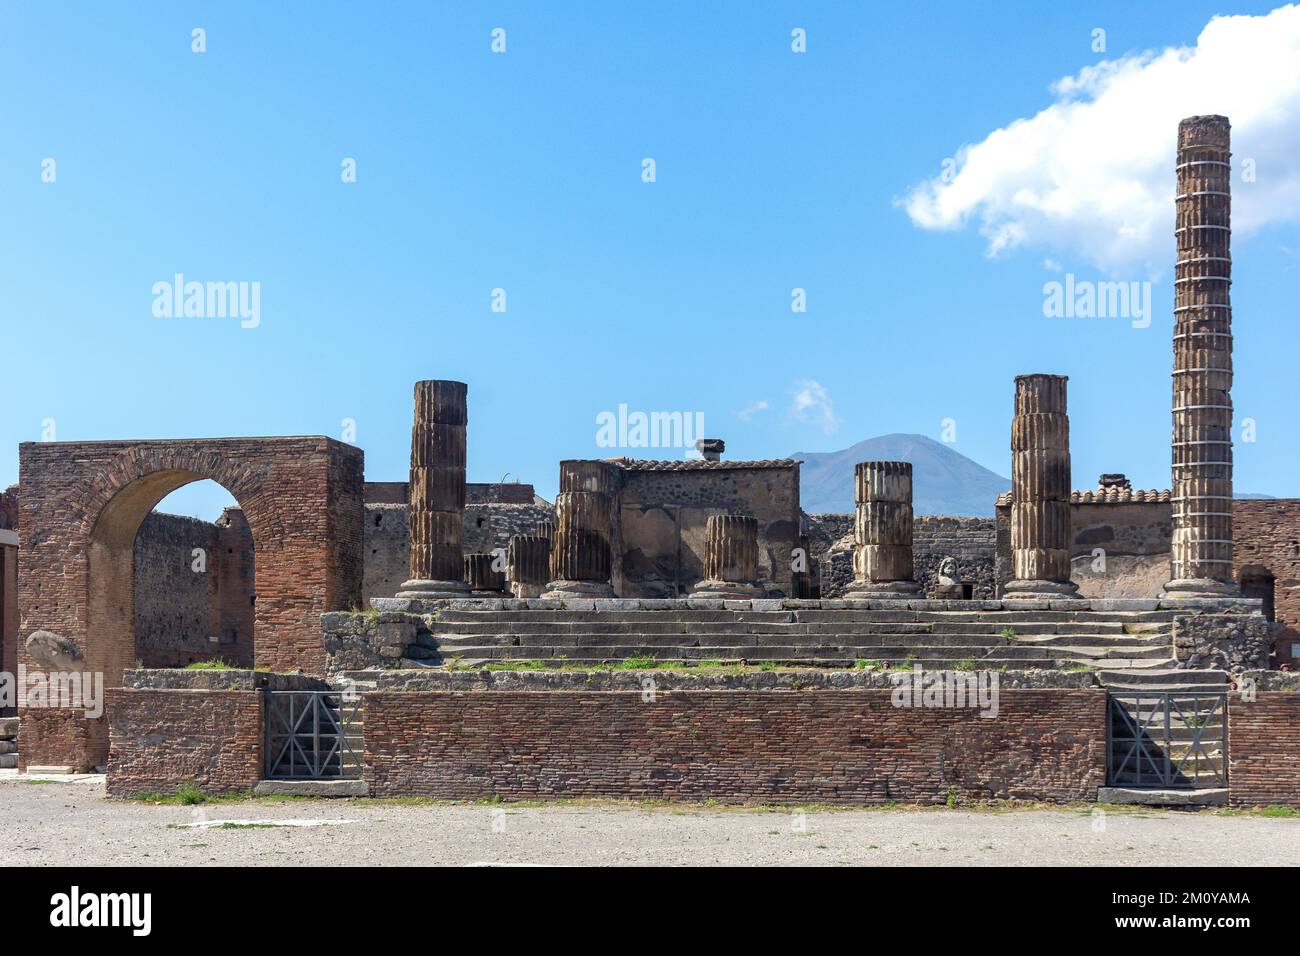 Il Tempio di Giupitor (Capitolium) con alle spalle il Vesuvio, Pompei, Regione Campania, Italia Foto Stock